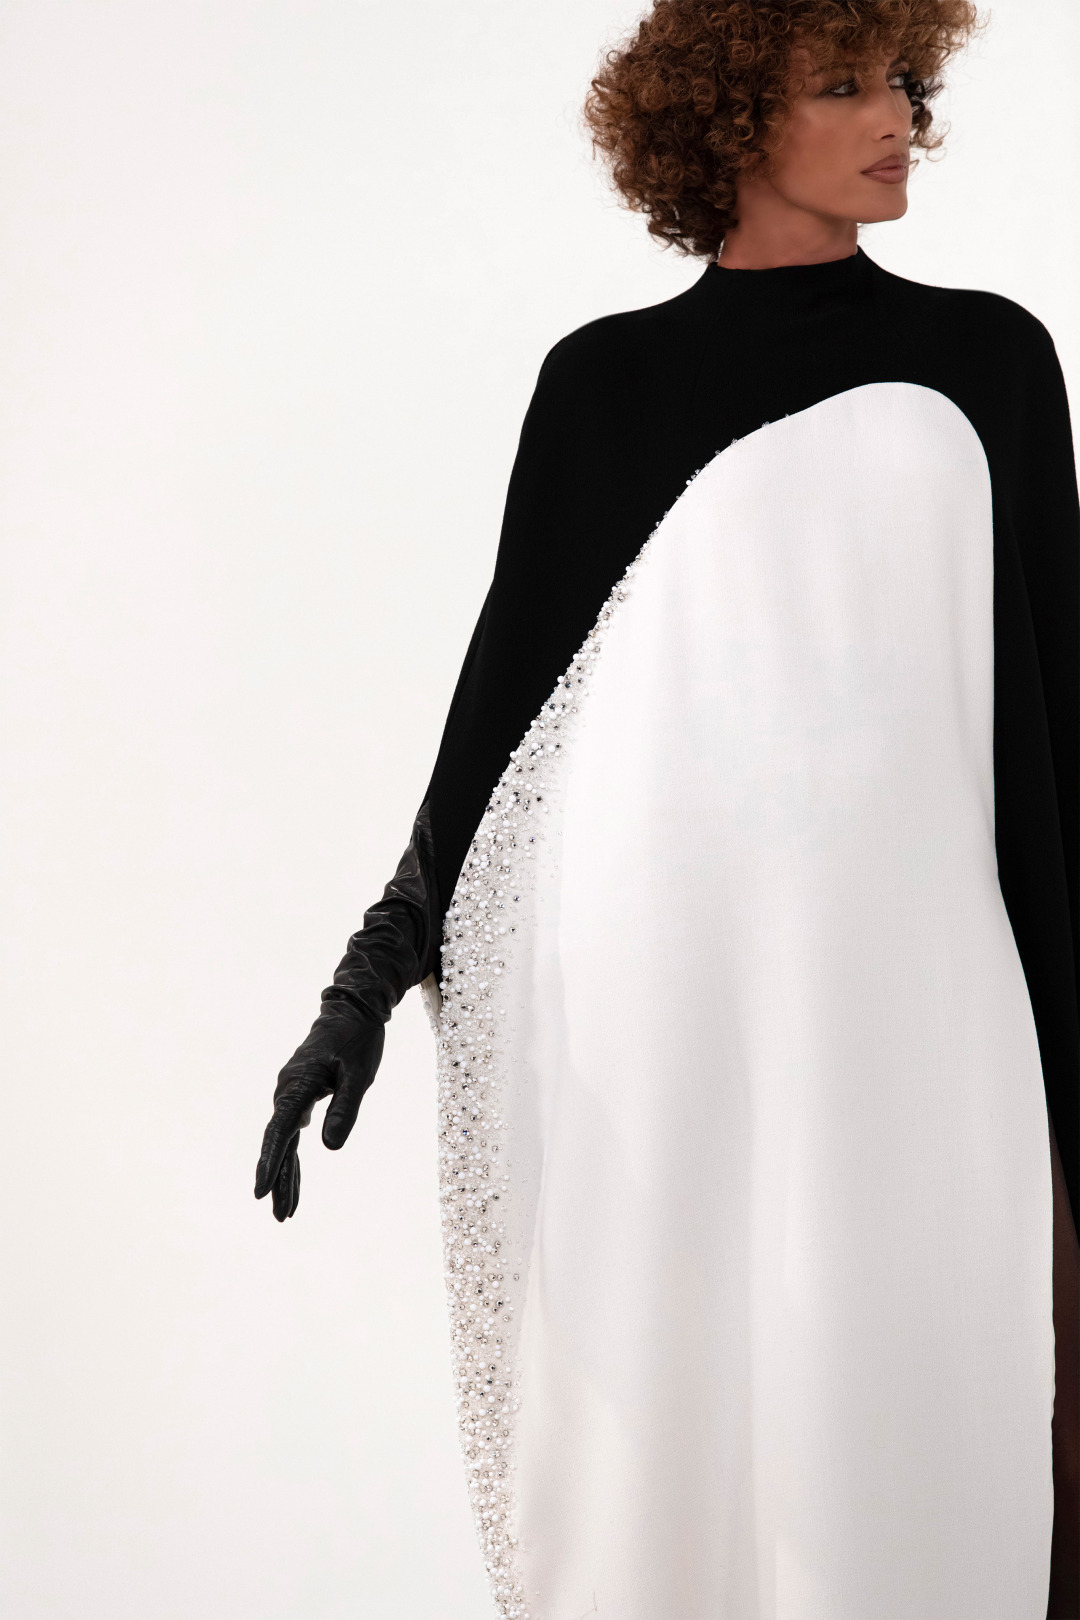 Stephane Rolland 2020-21 Sonbahar/Kış Couture